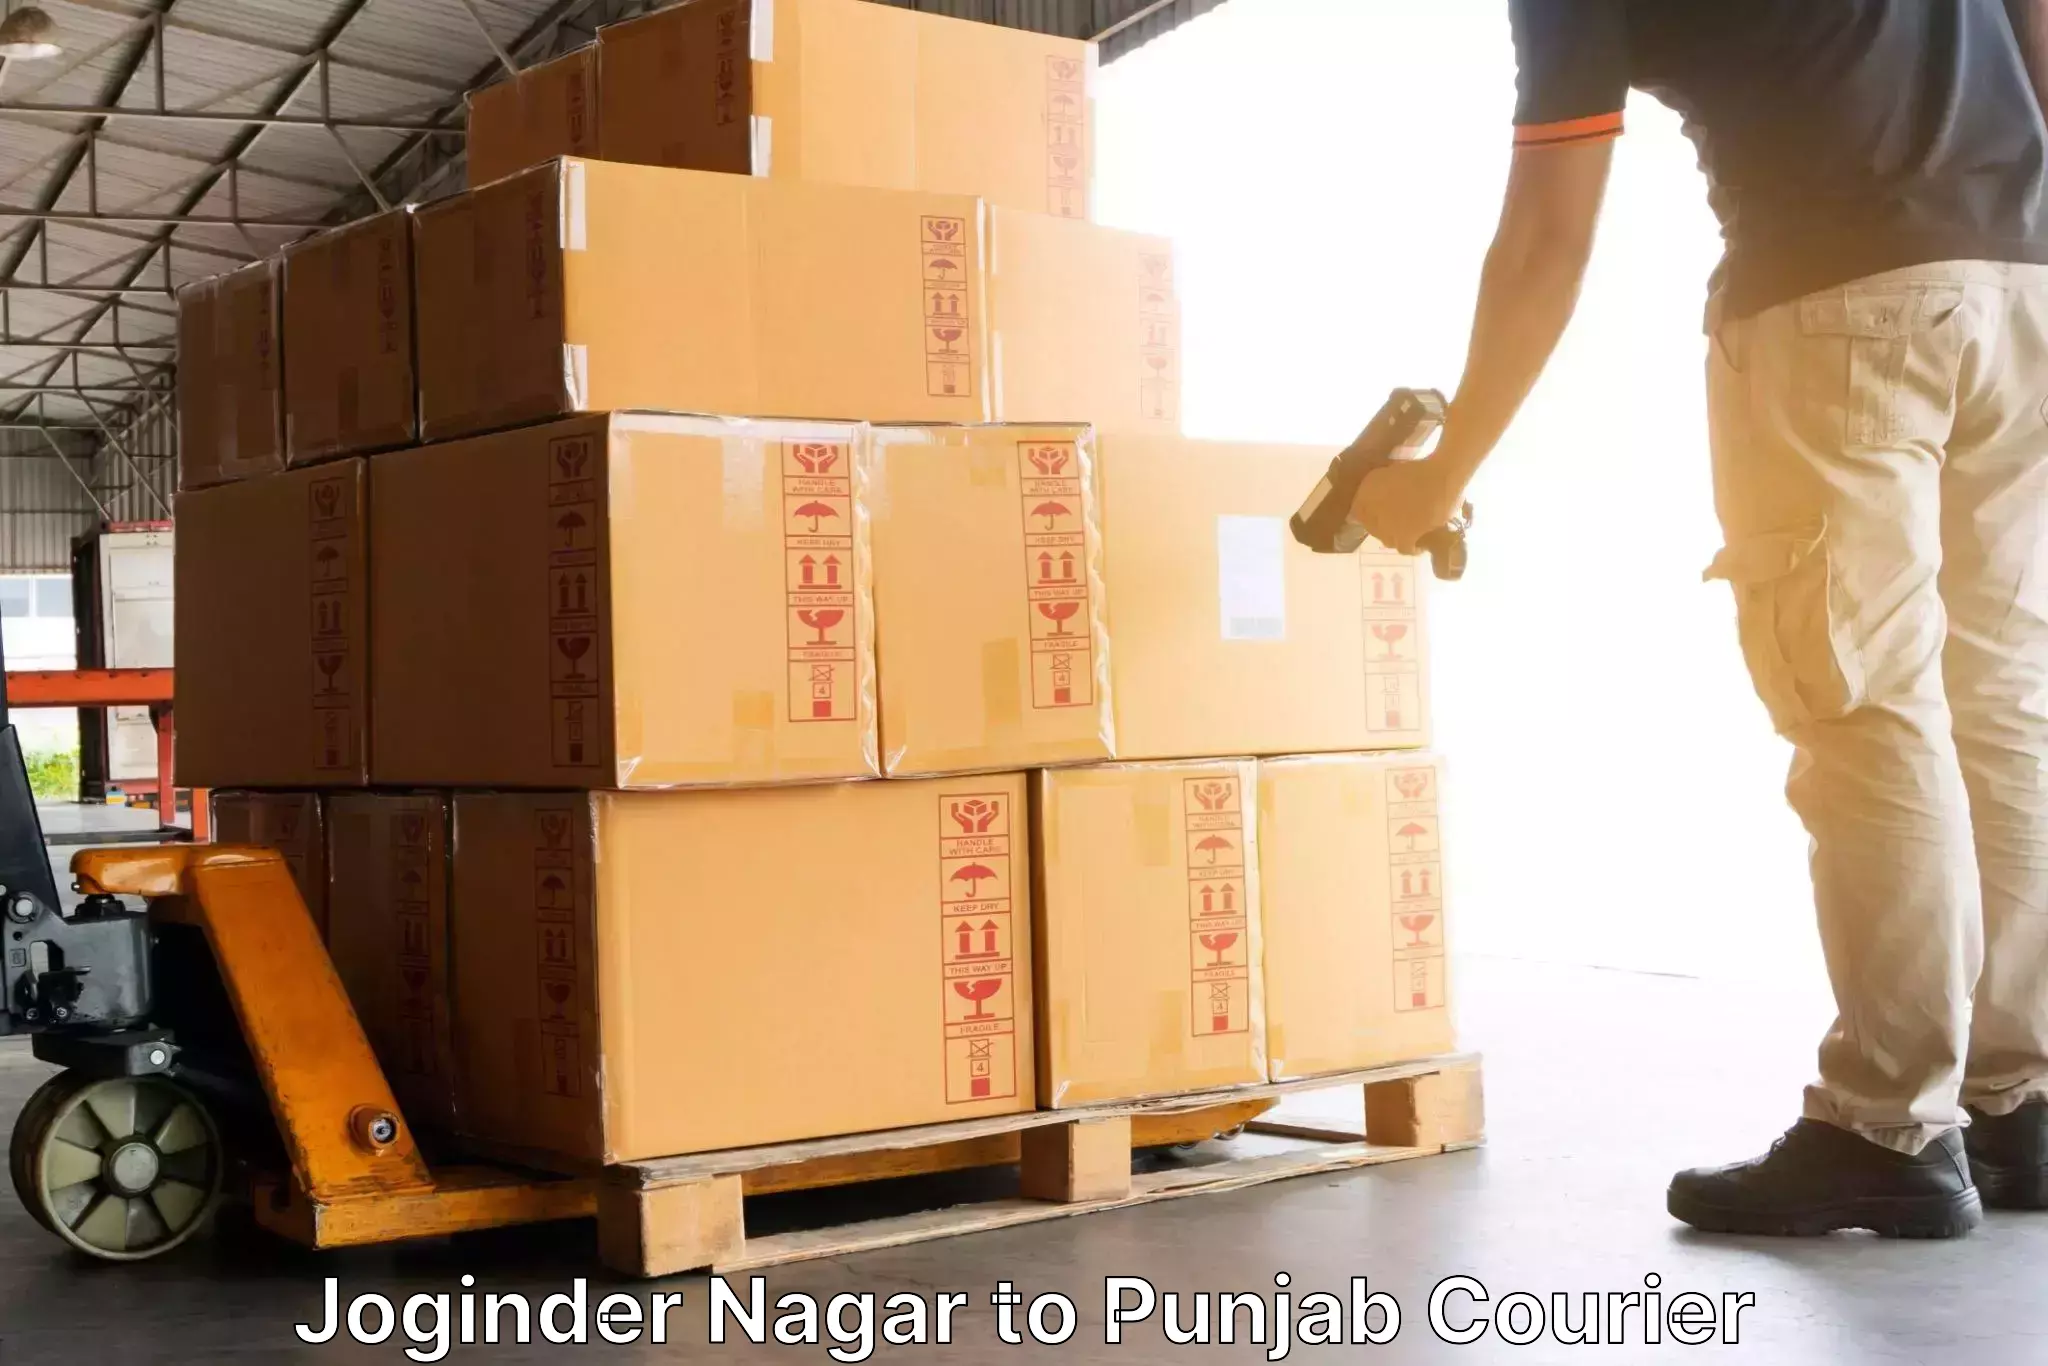 Express package delivery Joginder Nagar to Punjab